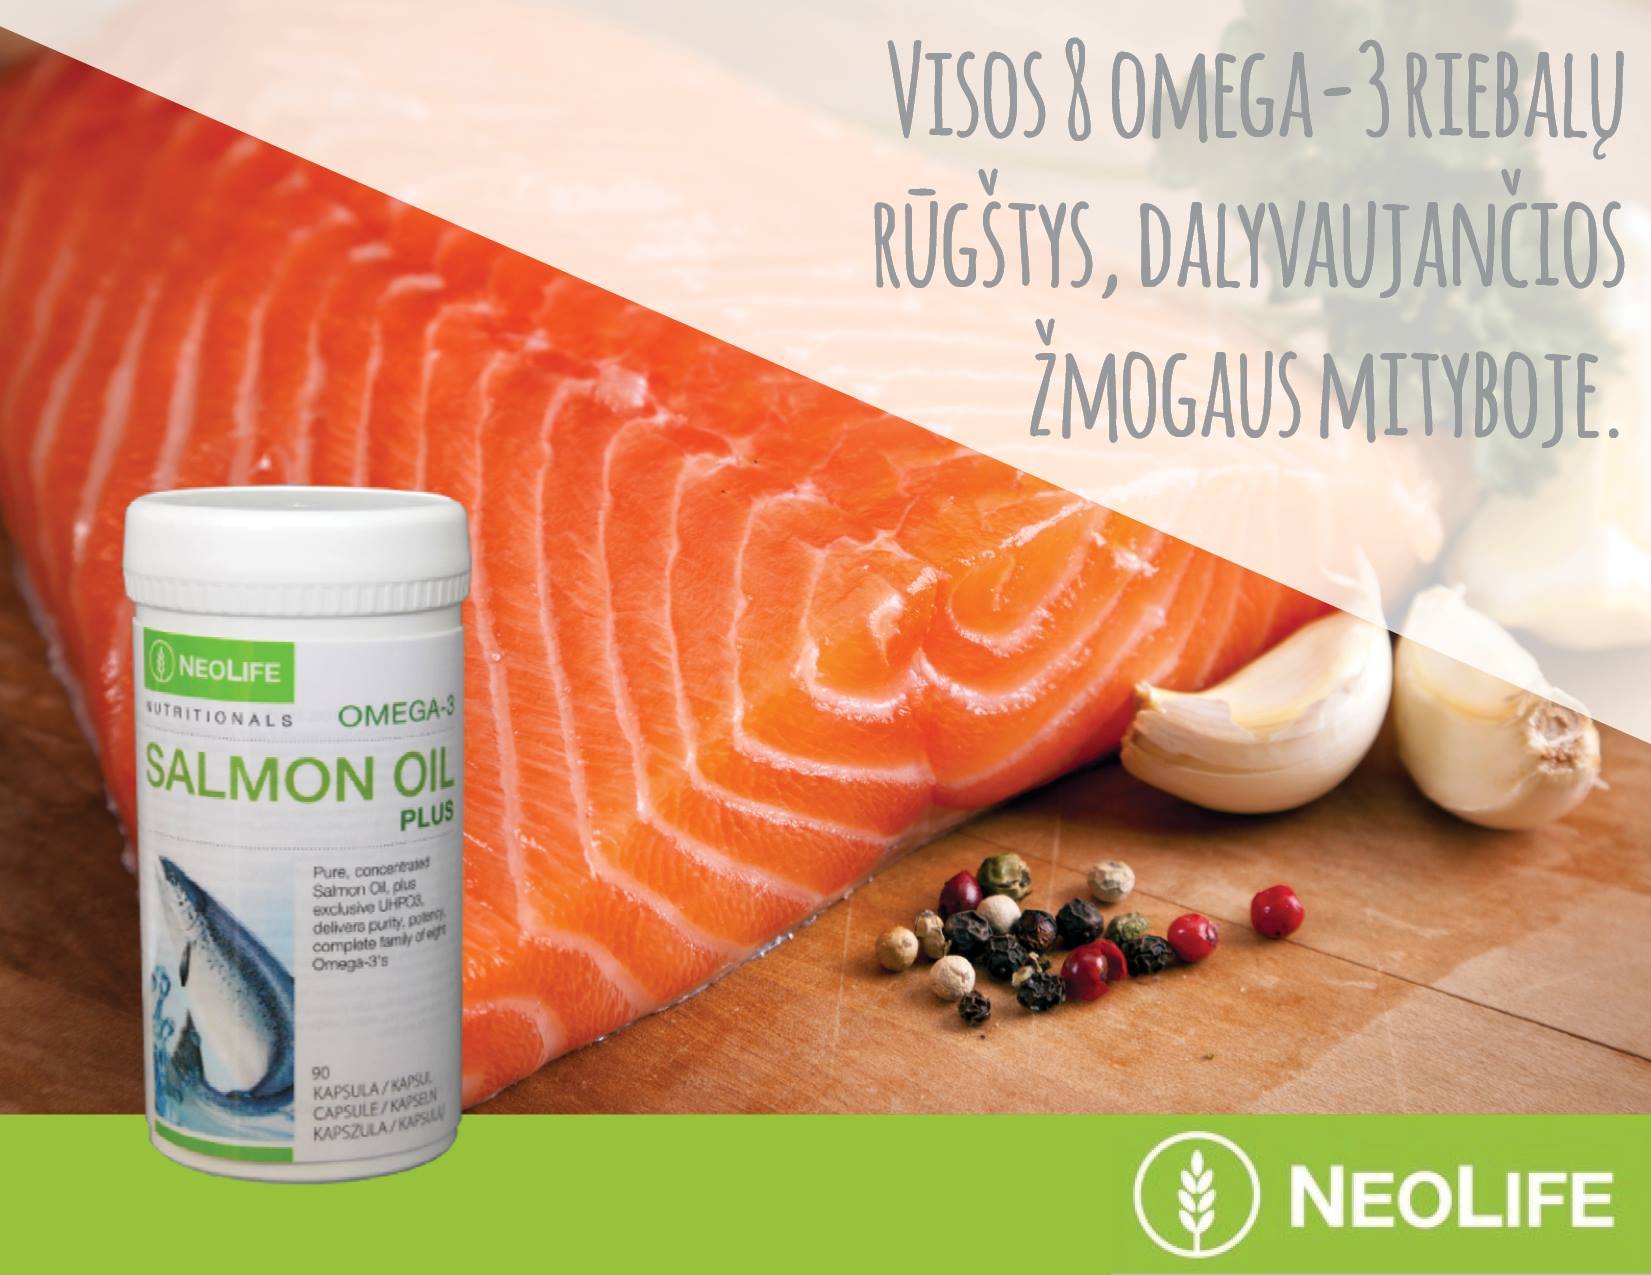 omega 3 riebalų rūgštys širdies sveikatai)